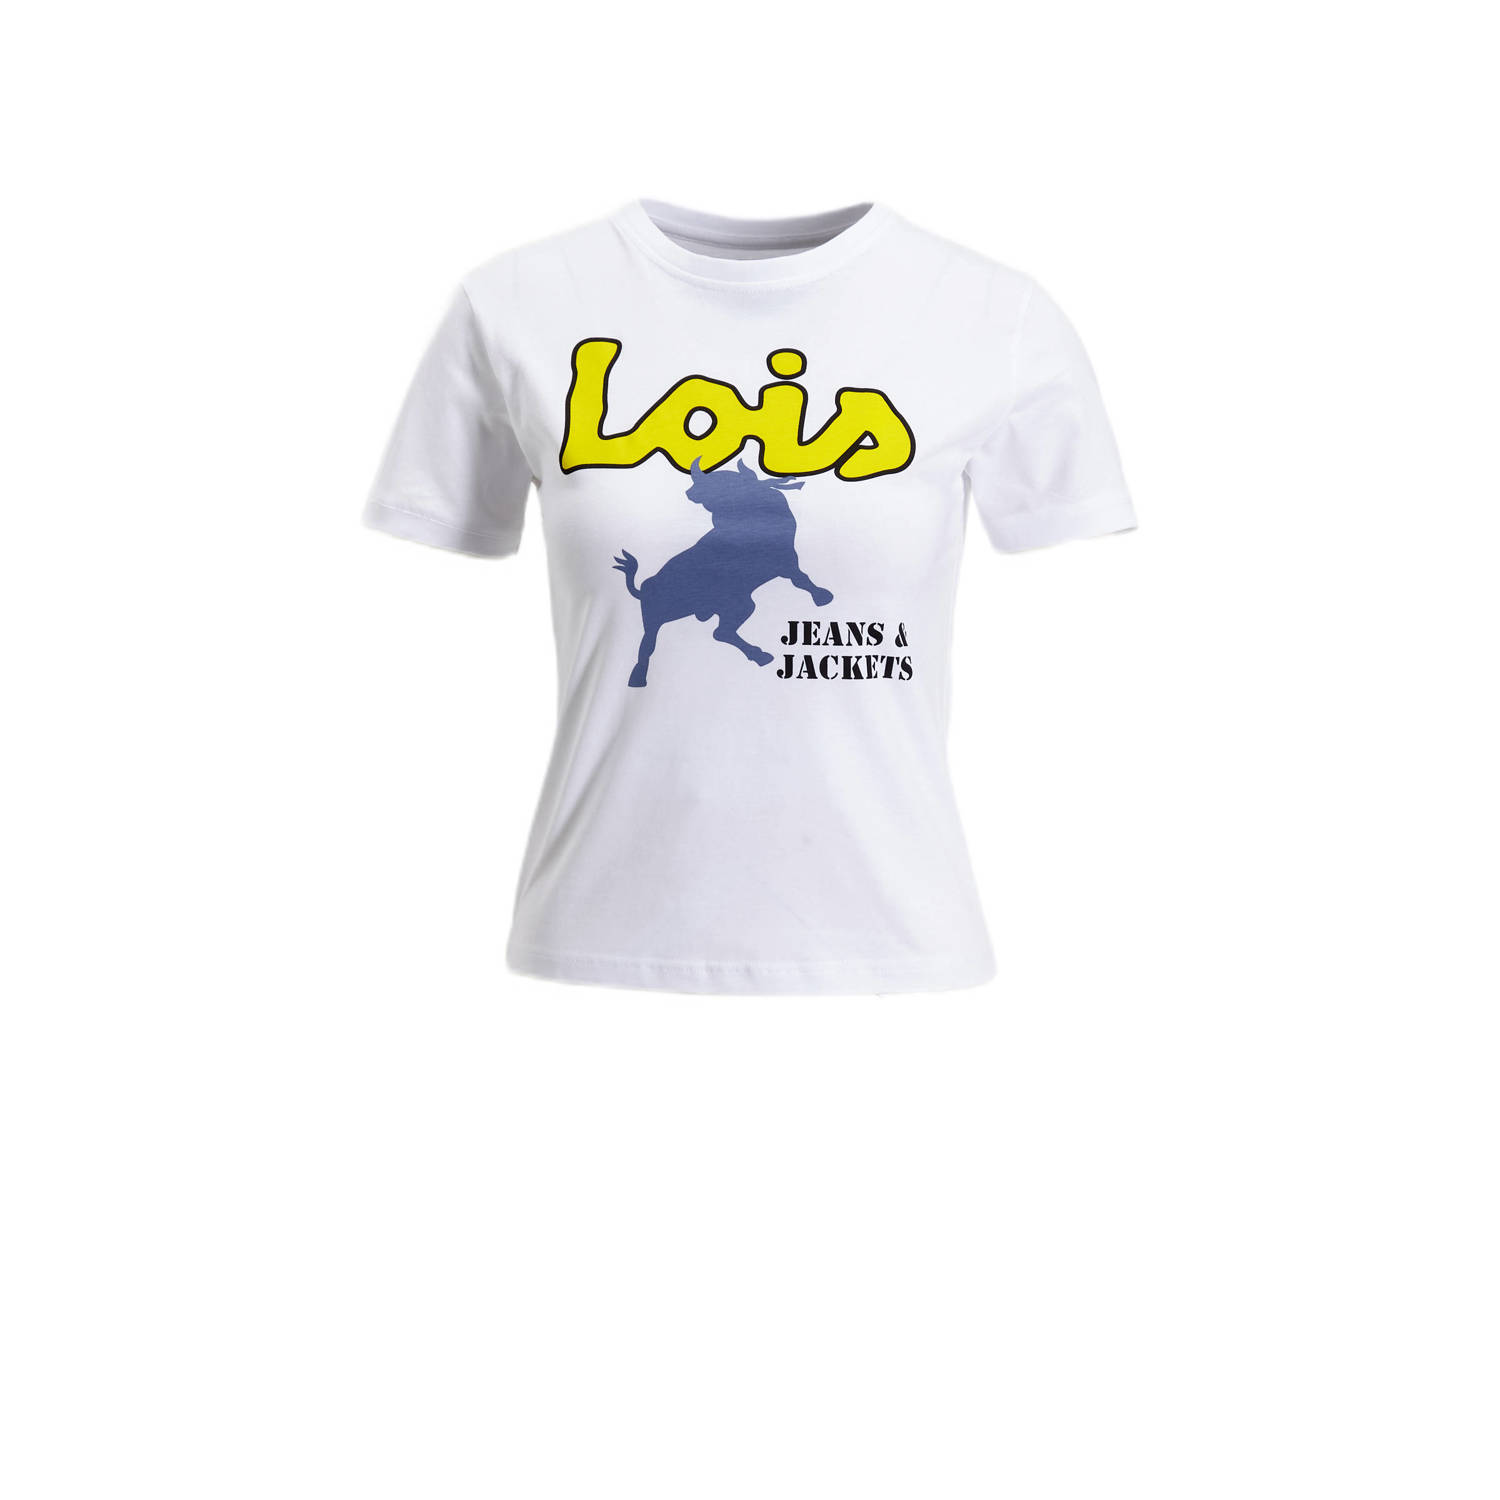 Lois T-shirt Emma Legend Abba met logo wit